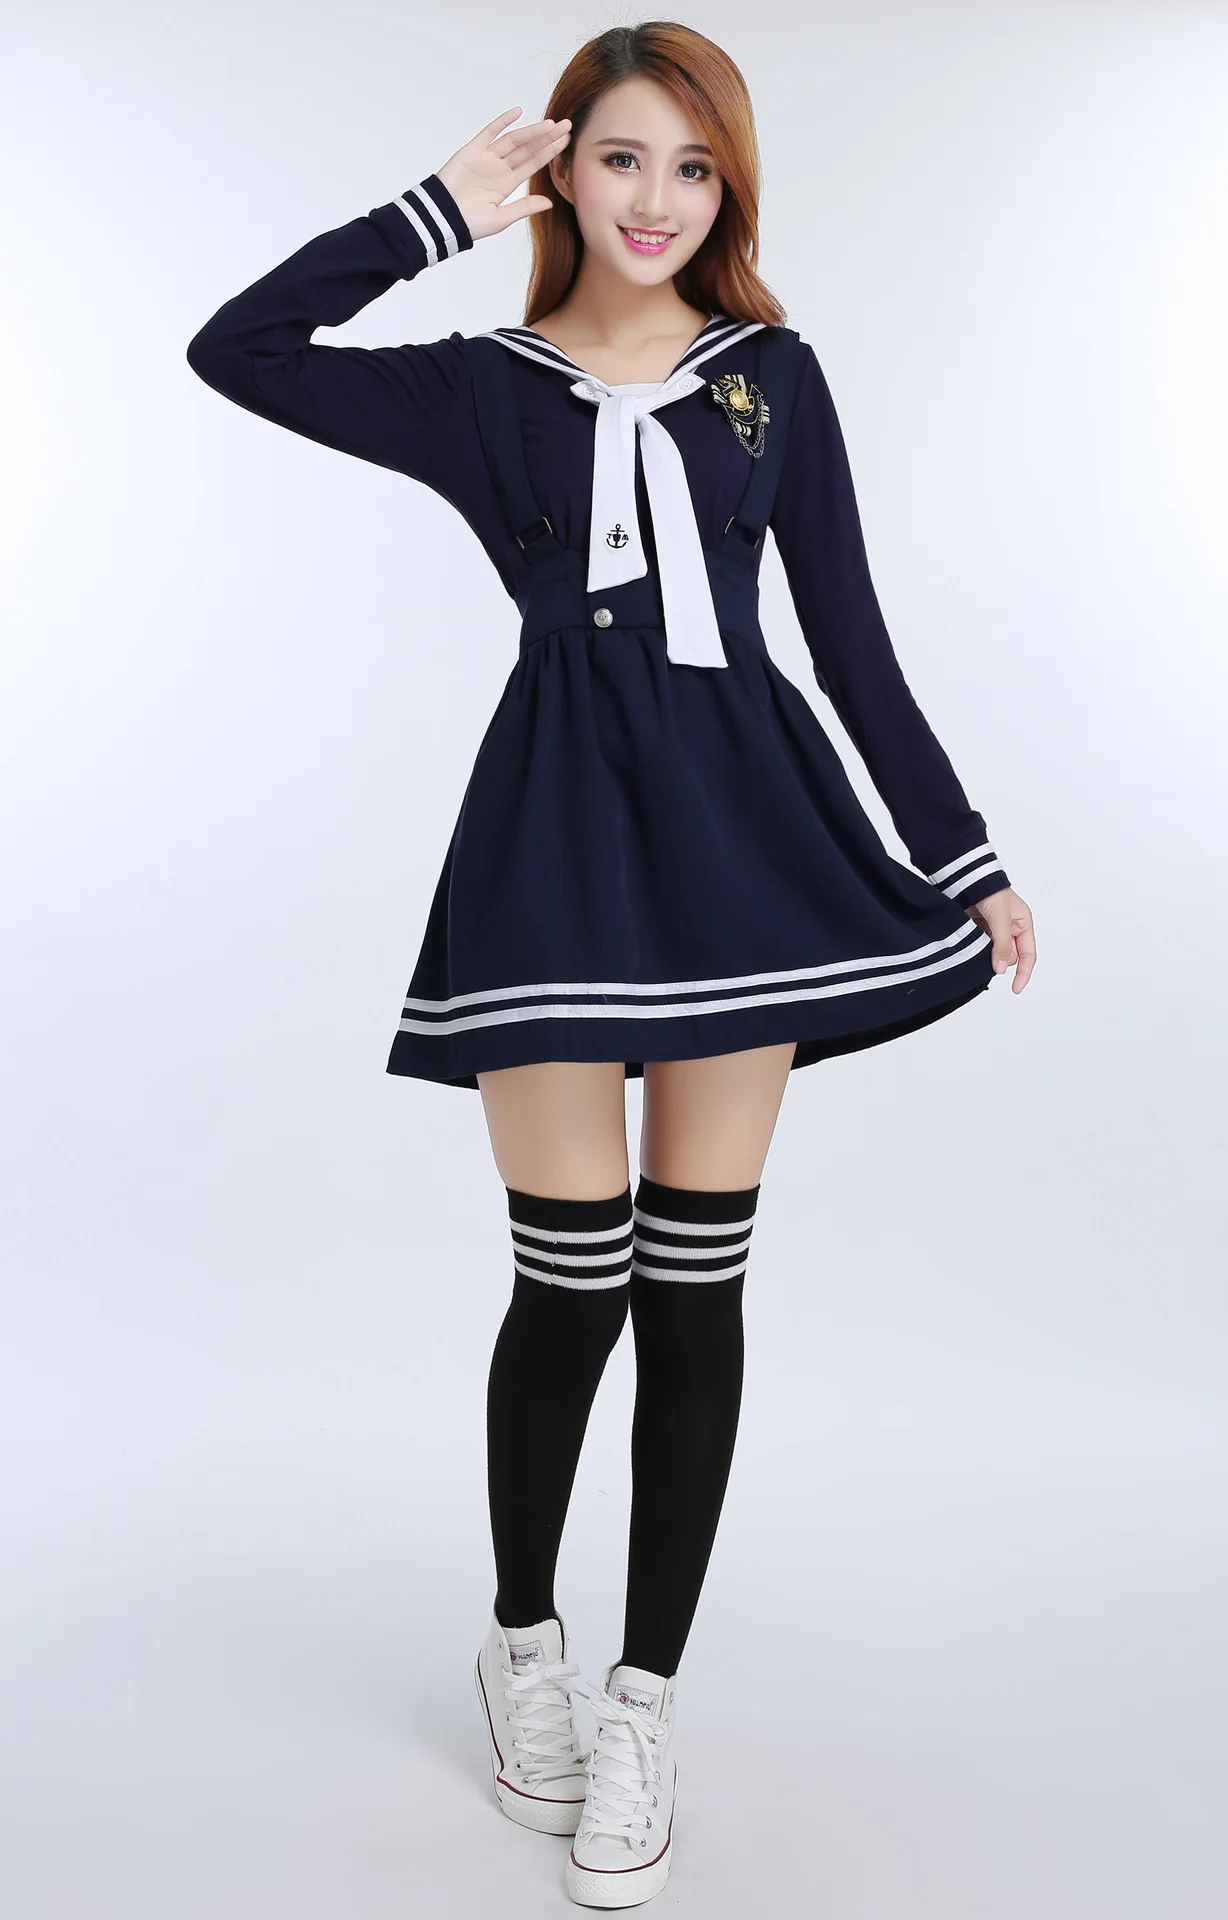 Японская Корейская школьная форма для девочек, Студенческая одежда, костюмы, Белая школьная форма моряка, рубашка+ темно-синяя юбка на бретелях для женщин